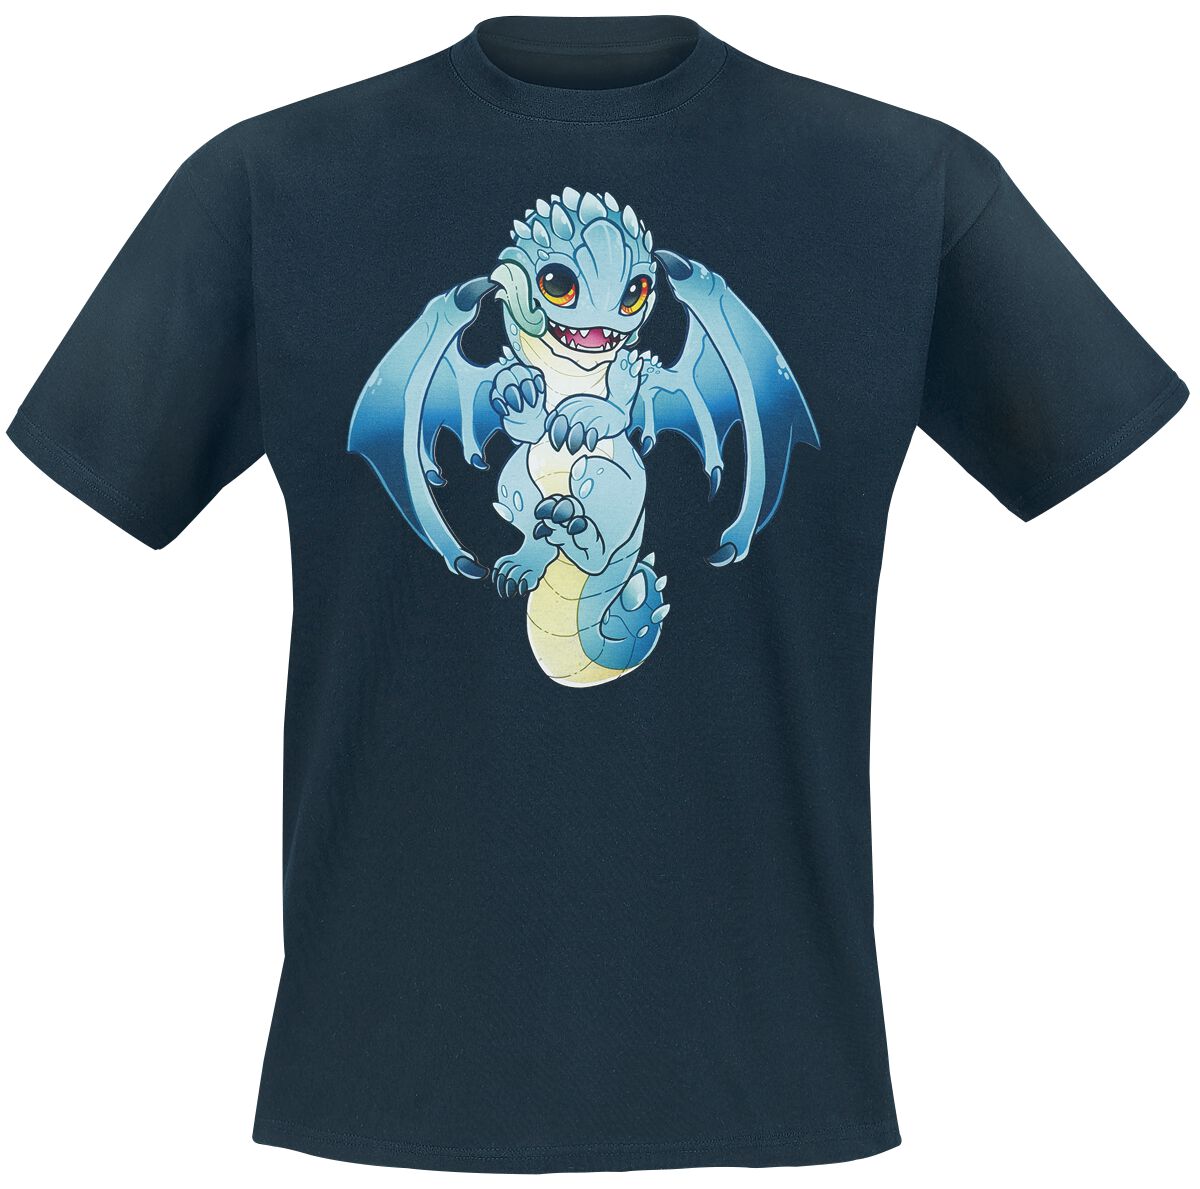 guild wars - gaming t-shirt - baby aurene by rintheyordle - s bis xxl - fÃ¼r mÃ¤nner - grÃ¶ÃŸe xl - - emp exklusives merchandise! dunkelblau